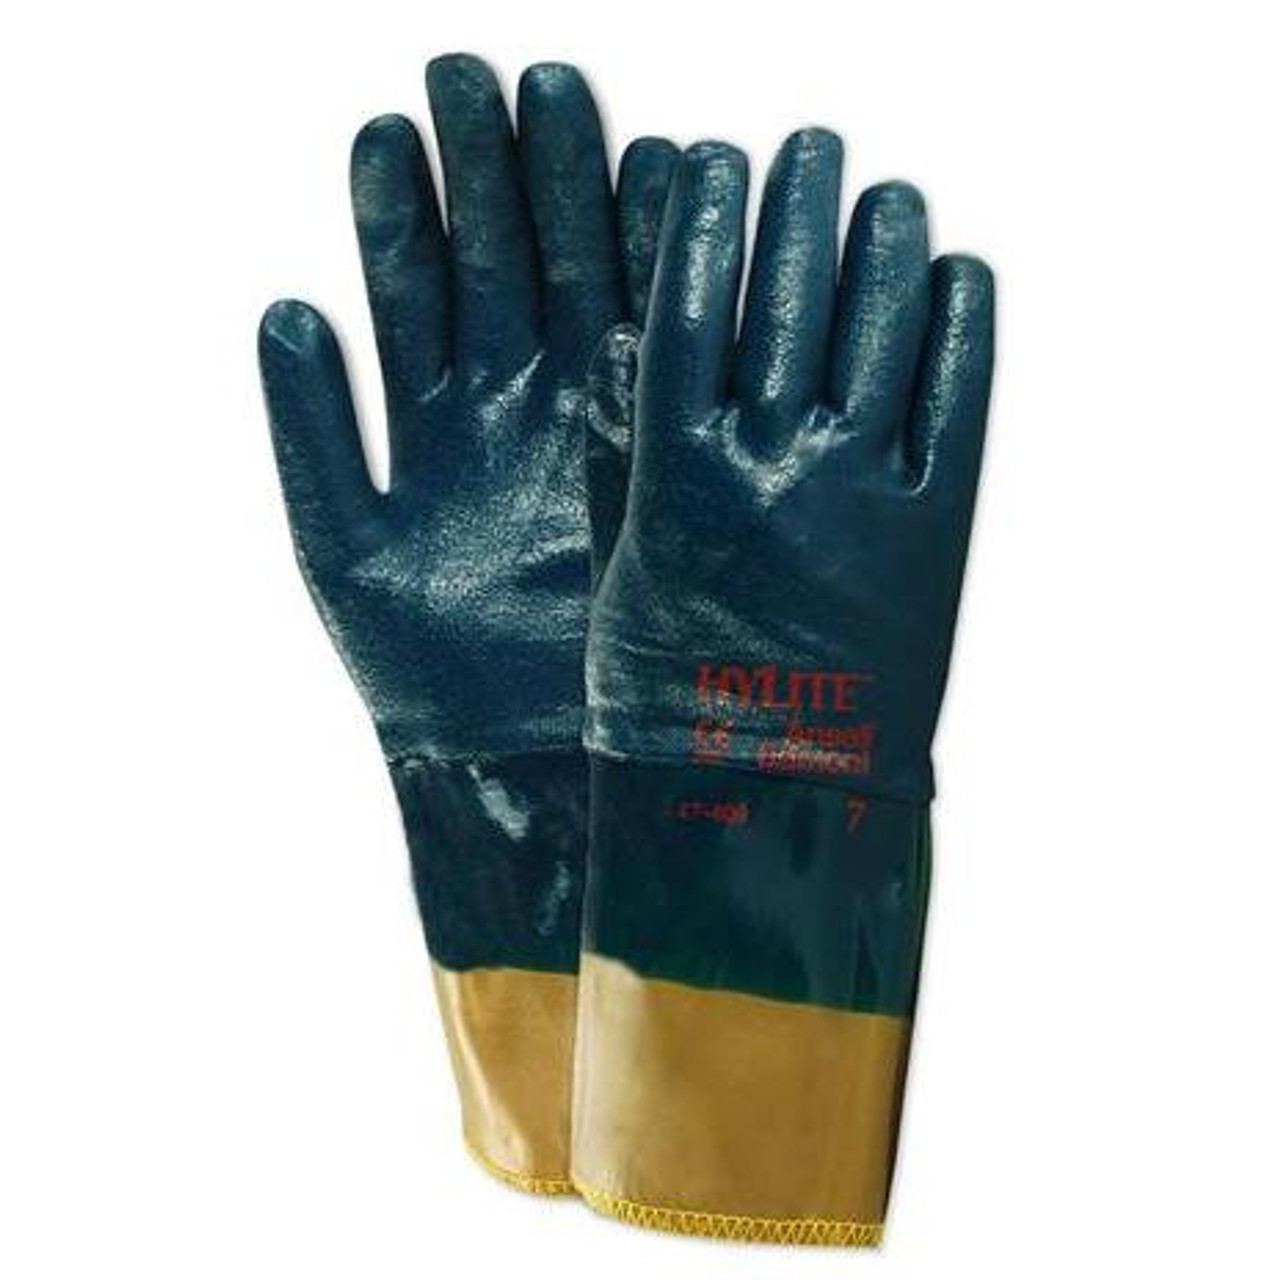 Hylite Gloves